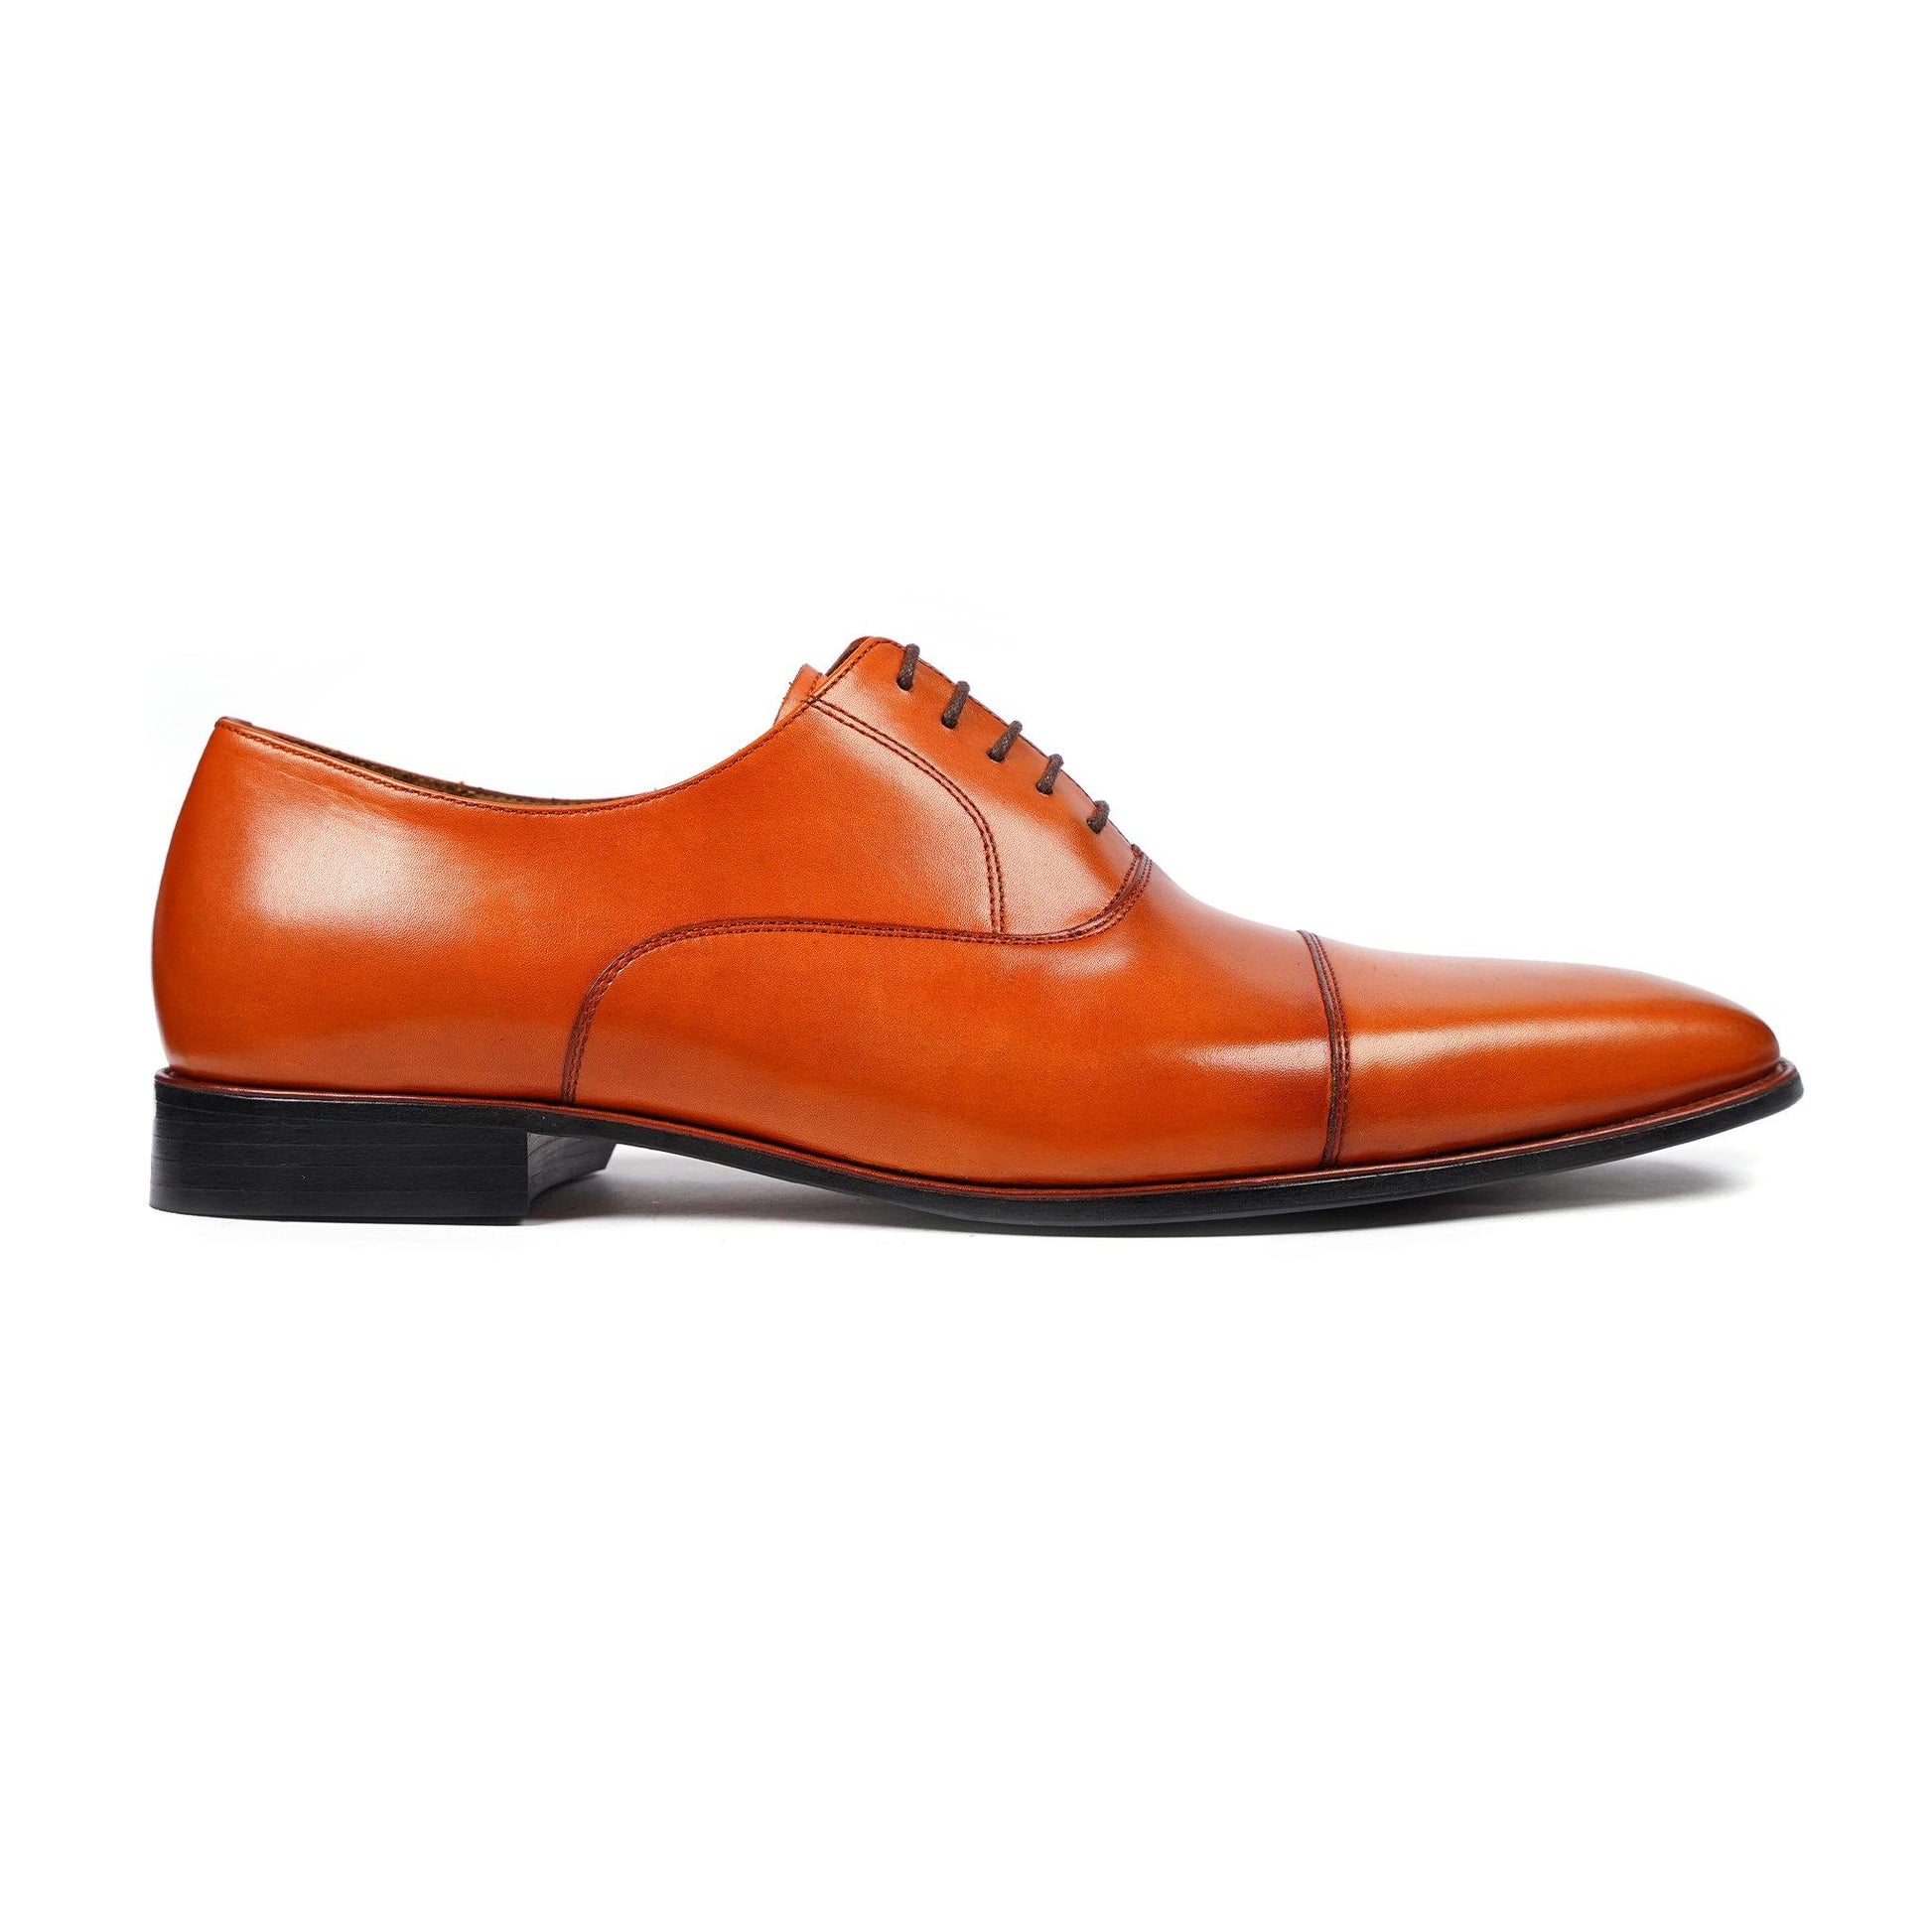 Men's Oxford Shoes - Shop Oxfords for Men Leather Boots, Men's Oxford Shoes, Shop Oxfords for Men